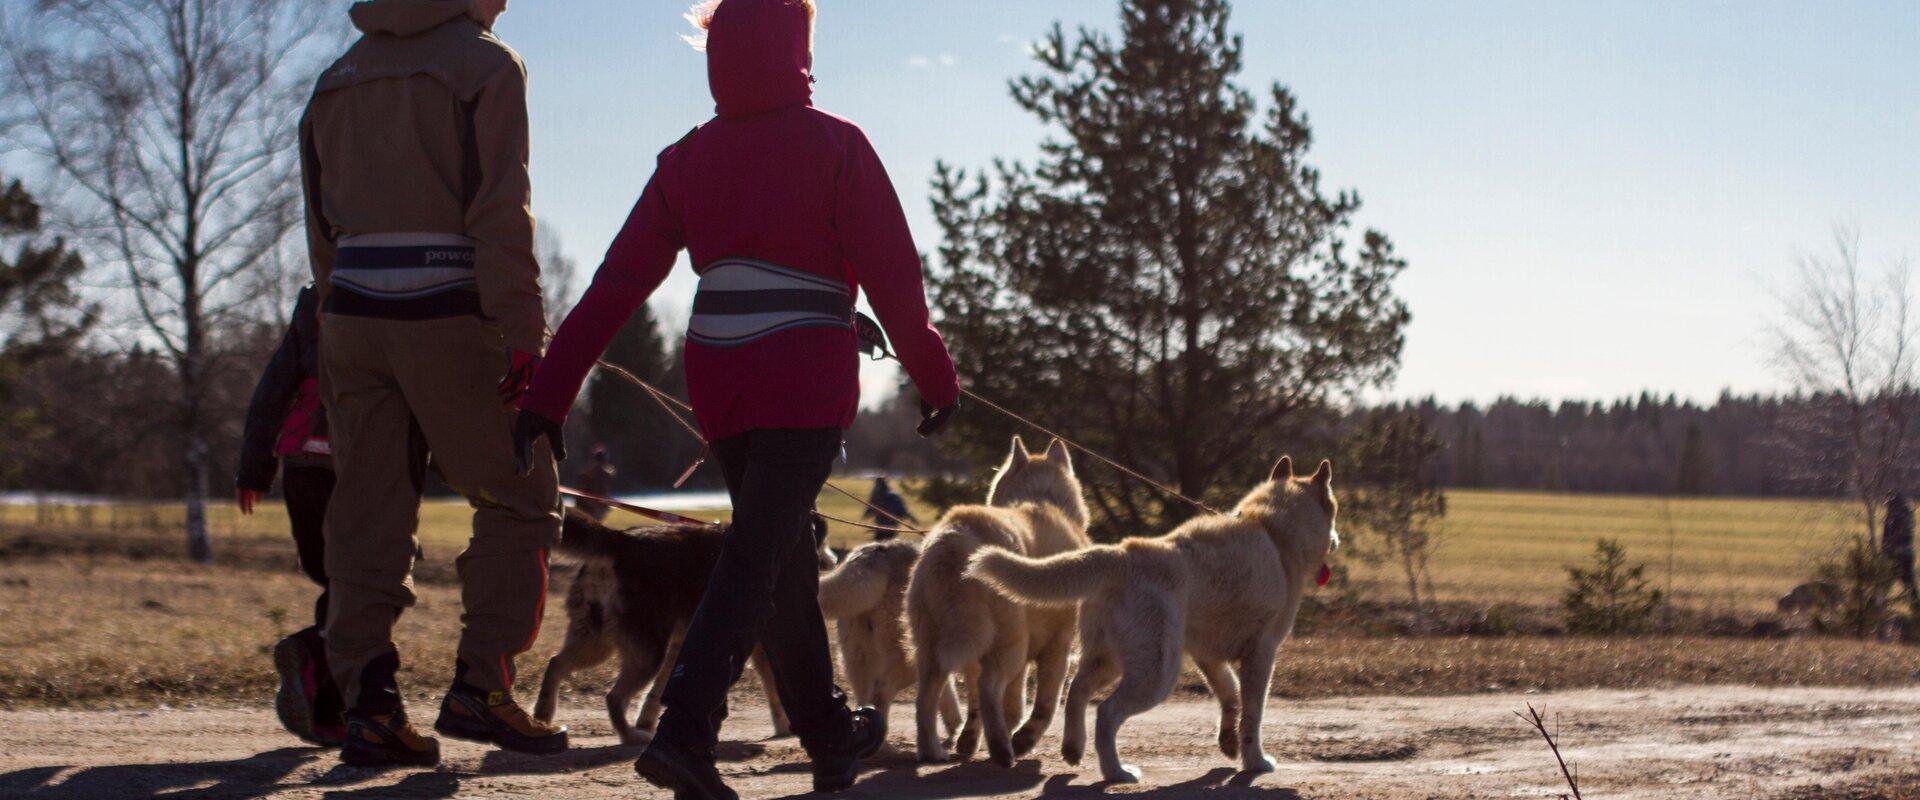 Tour to a Husky Park and a Cani-Cross Hike with Siberian Huskies